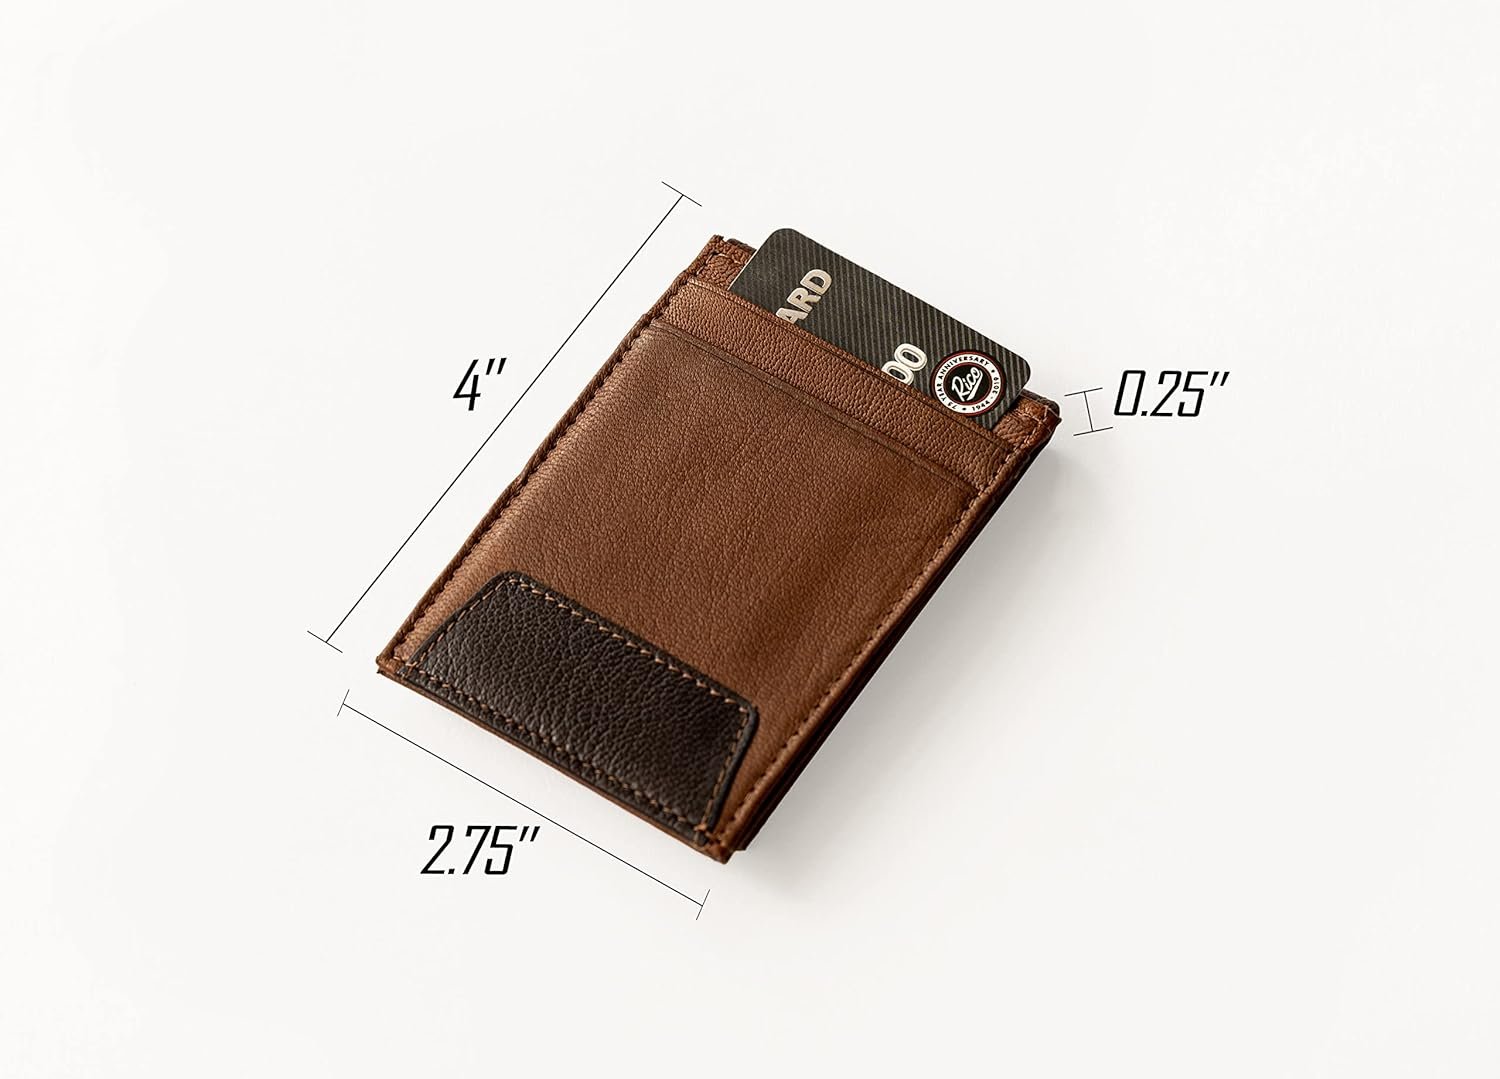 Indiana Pacers Premium Black Leather Wallet, Front Pocket Magnetic Money Clip, Laser Engraved, Vegan